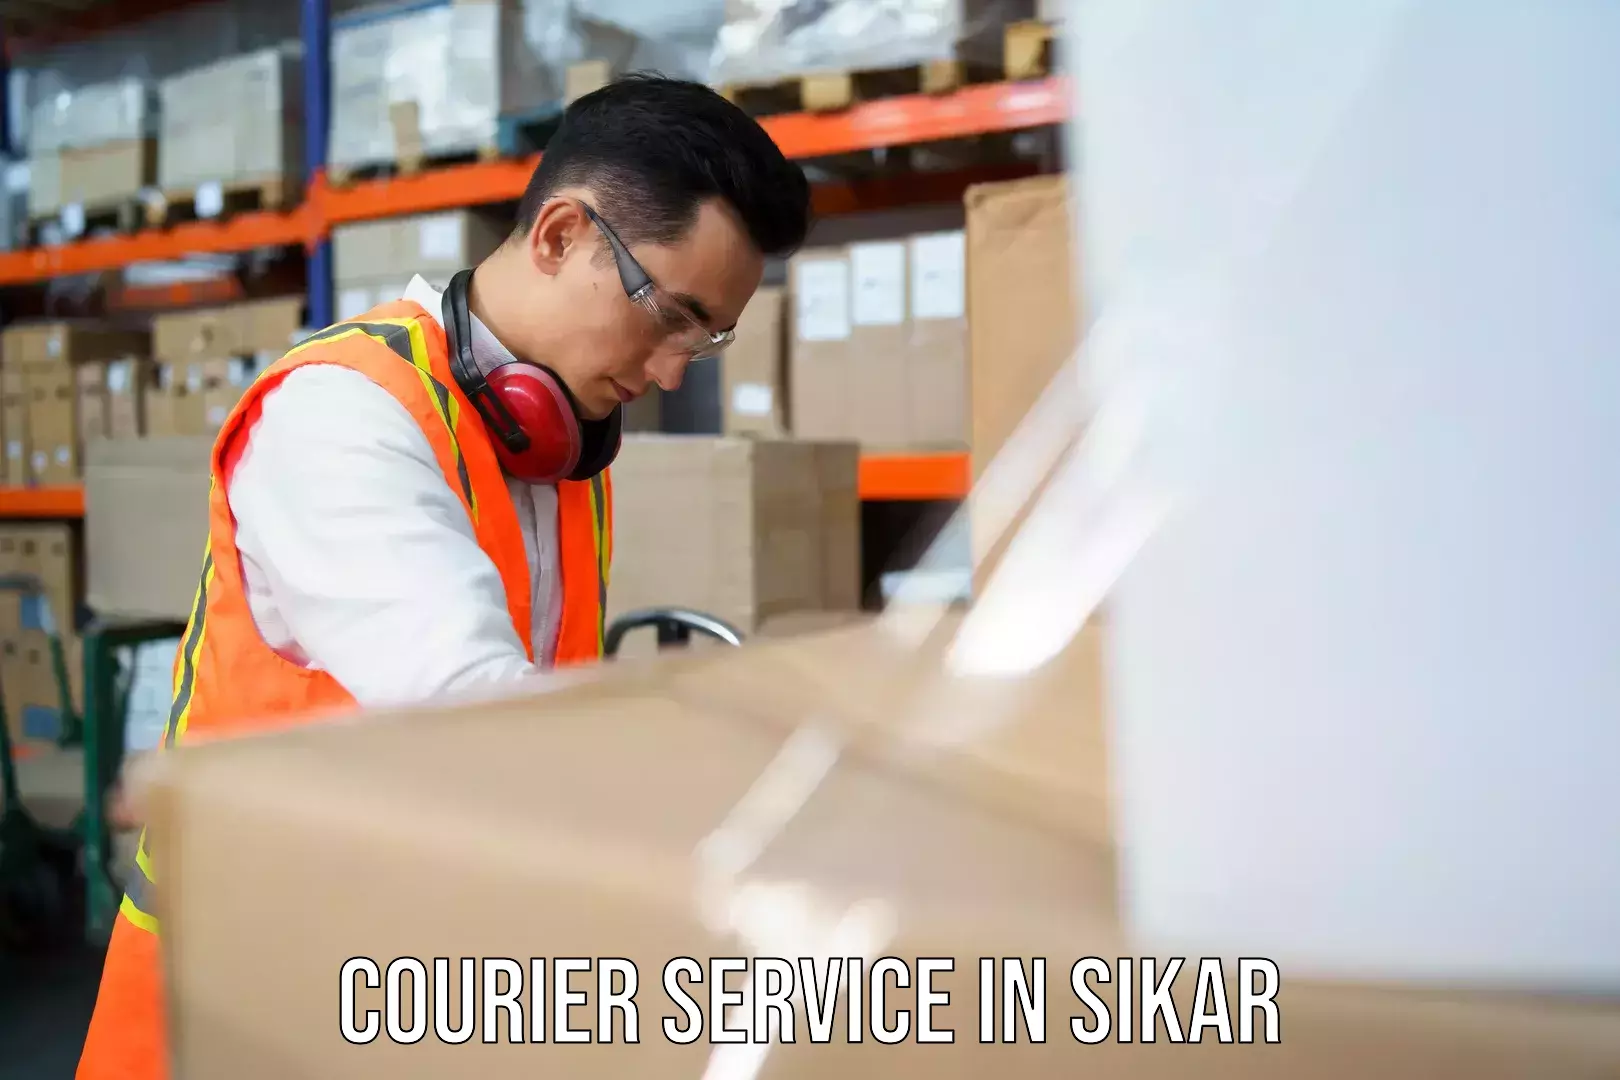 Efficient cargo handling in Sikar